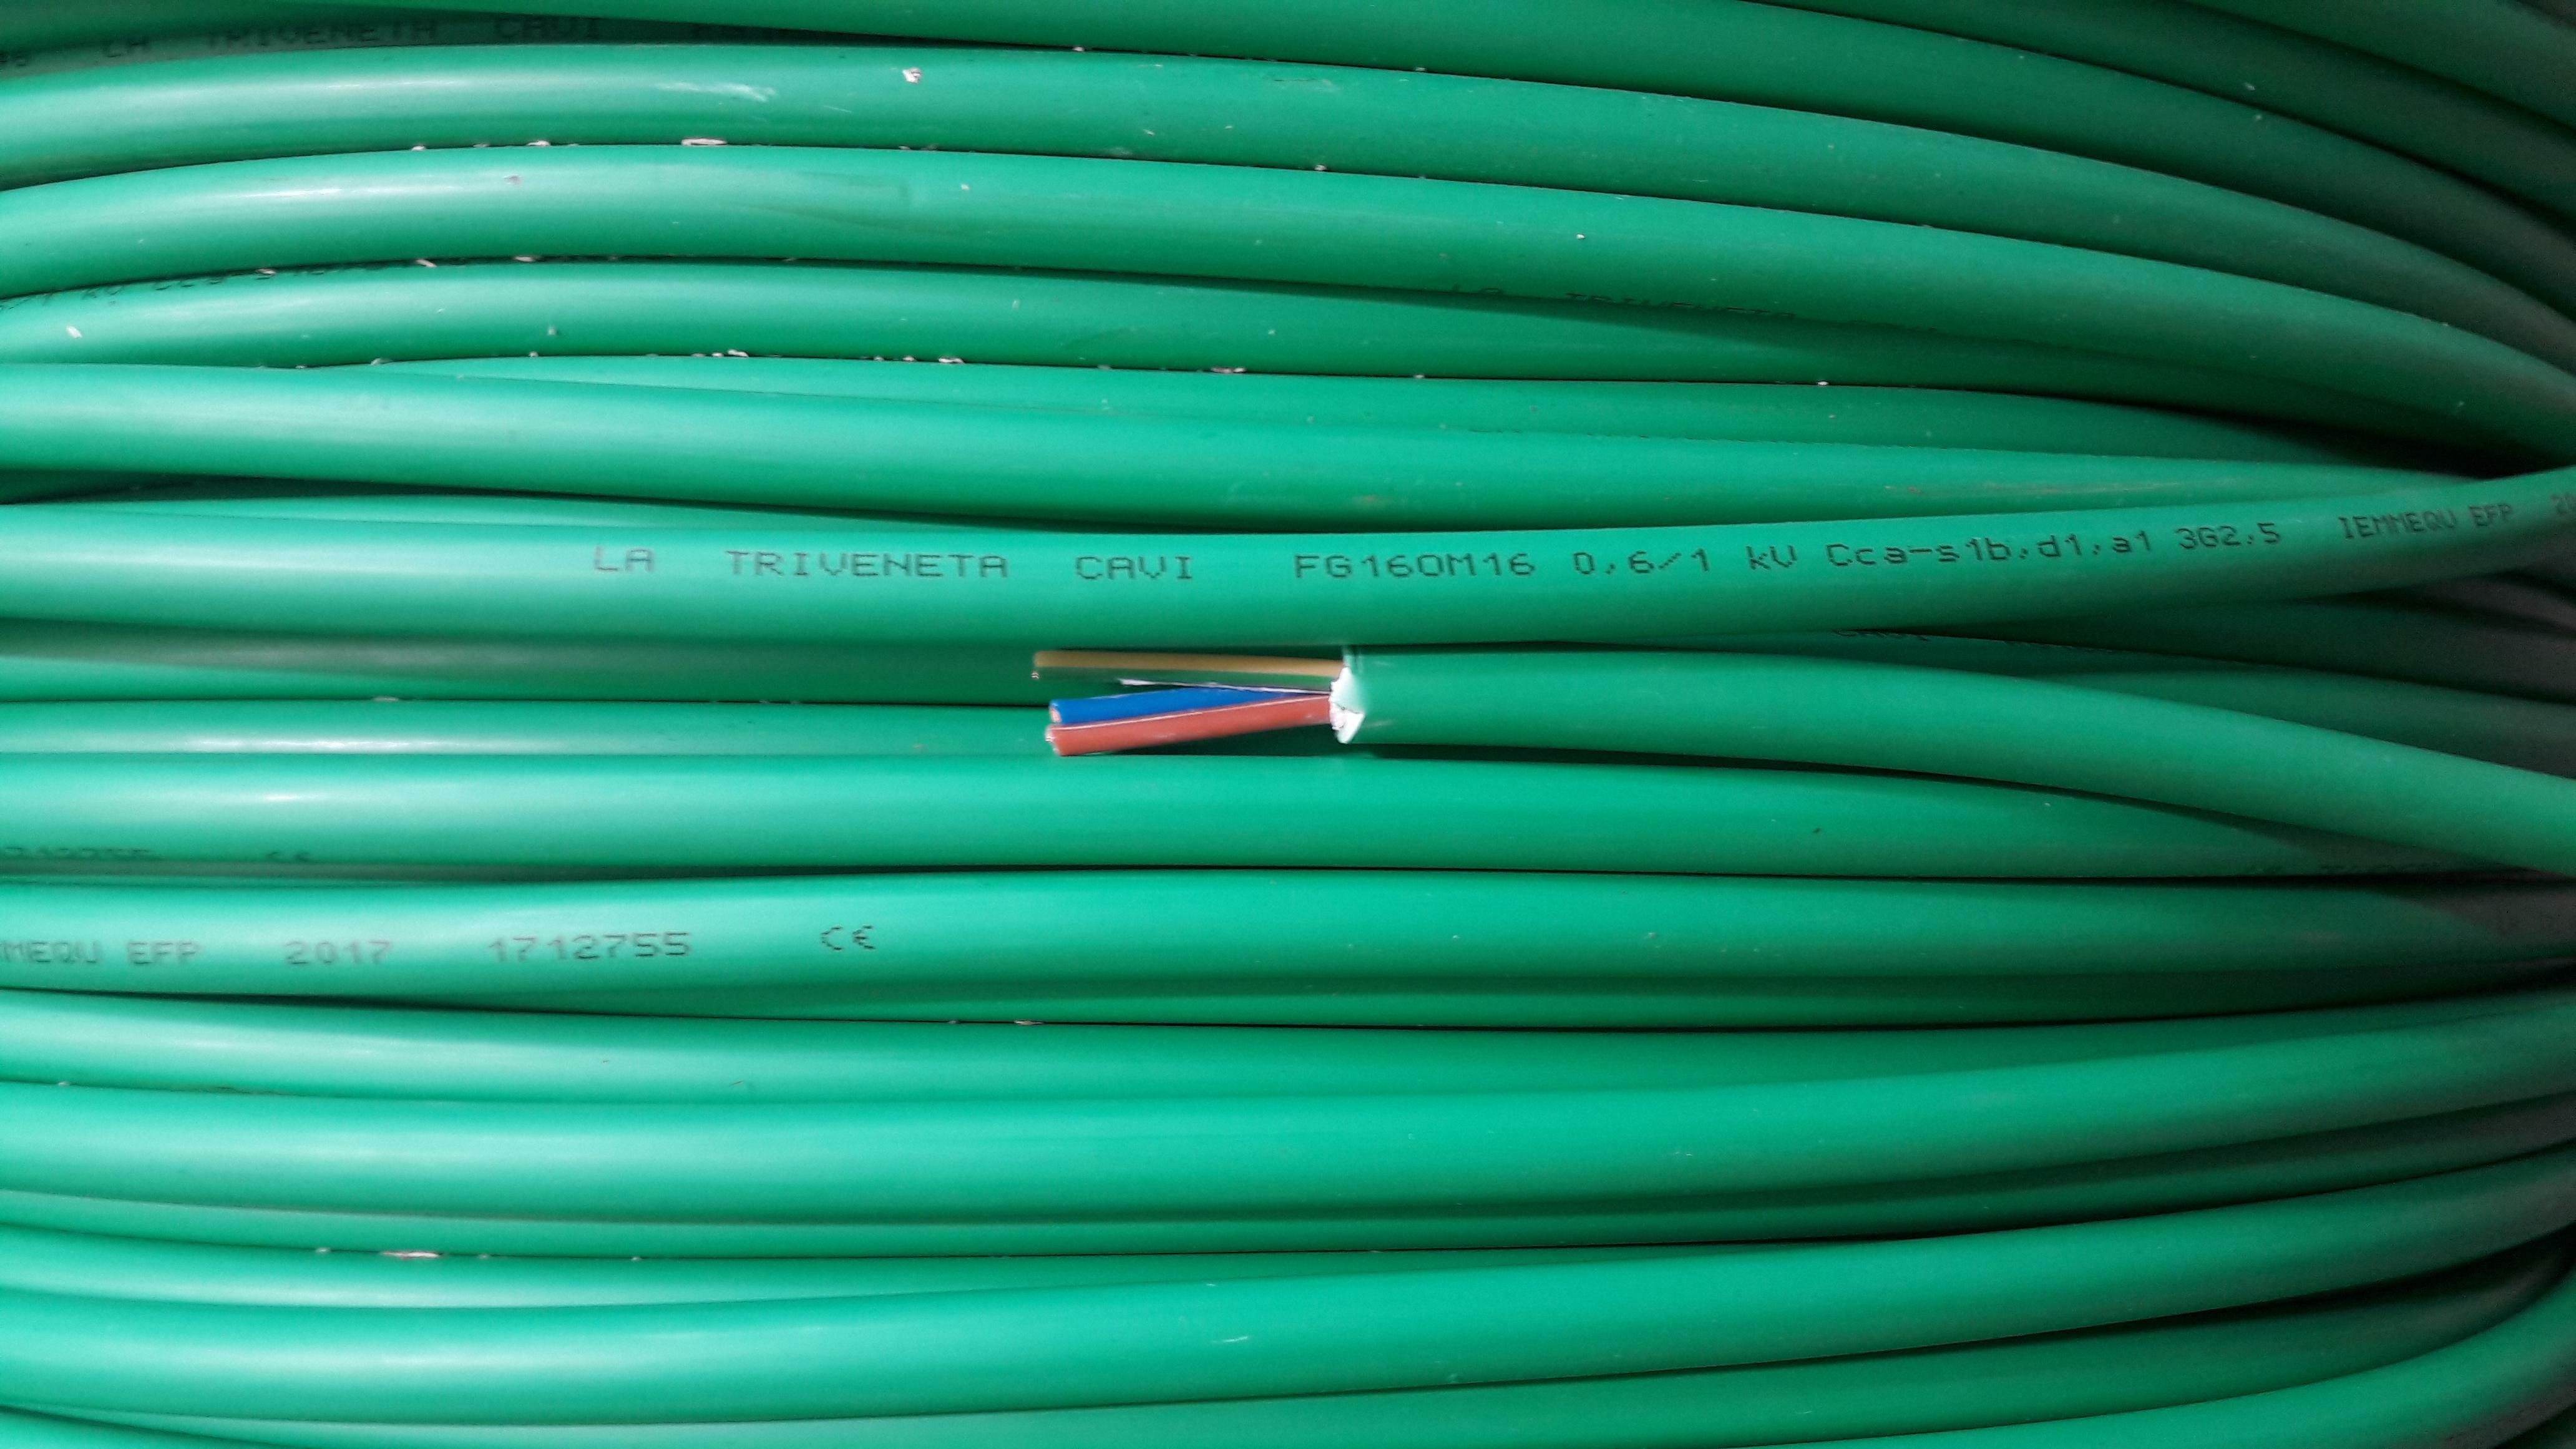 cavi cavi al metro cavo fg16om16 multipolare fg16 verde 3 conduttori da 2.5mmq con giallo verde fg7om1-3gx2,5 fg16om16-3gx2,5